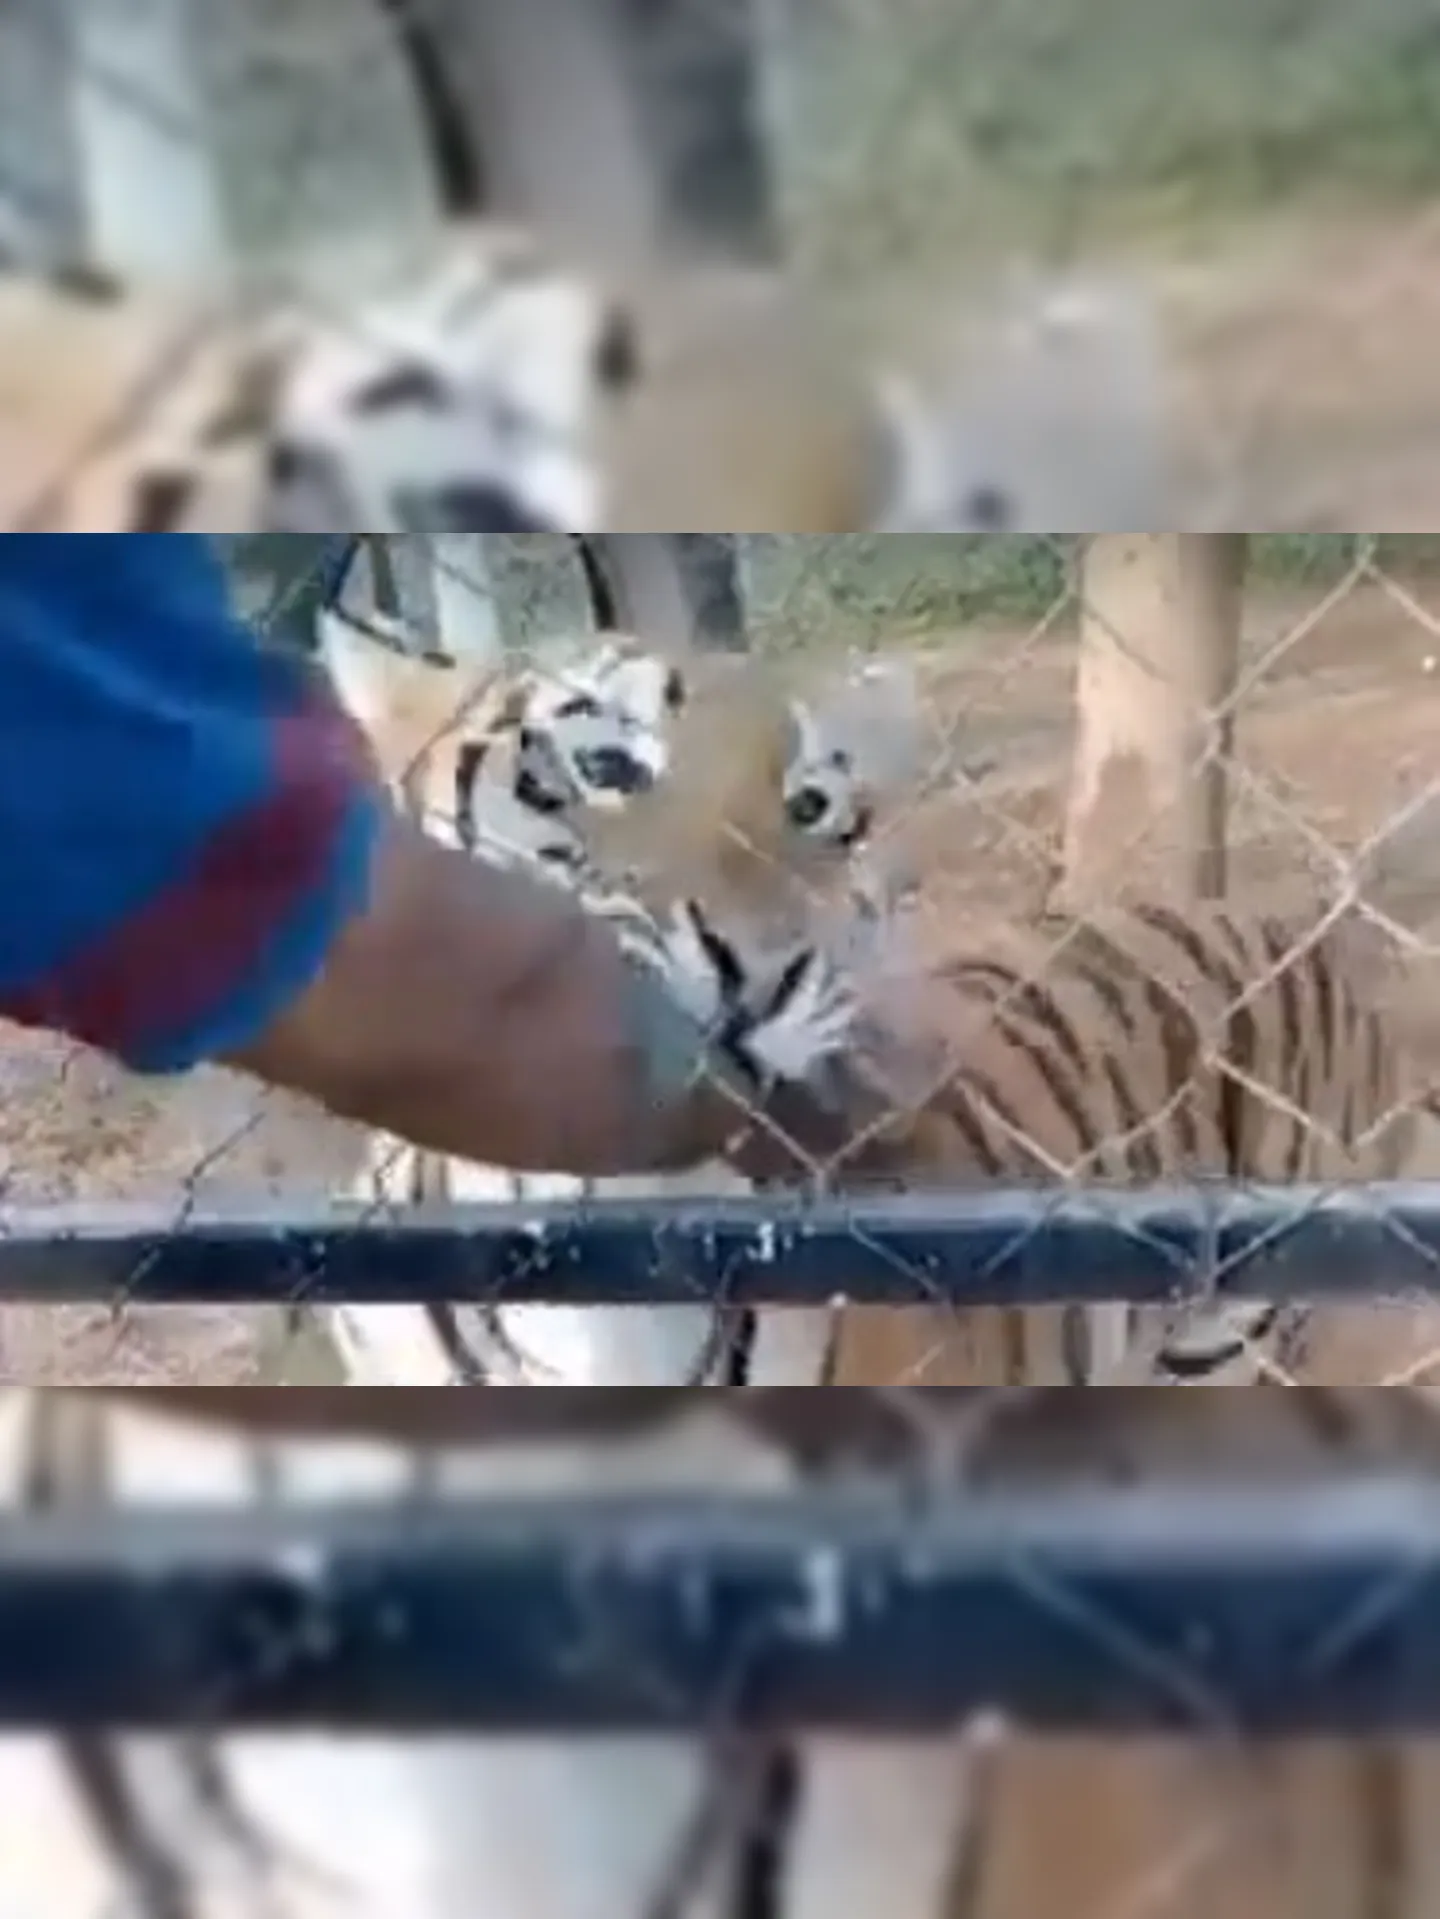 Homem tem braço mordido por tigre depois de tentar fazer carinho